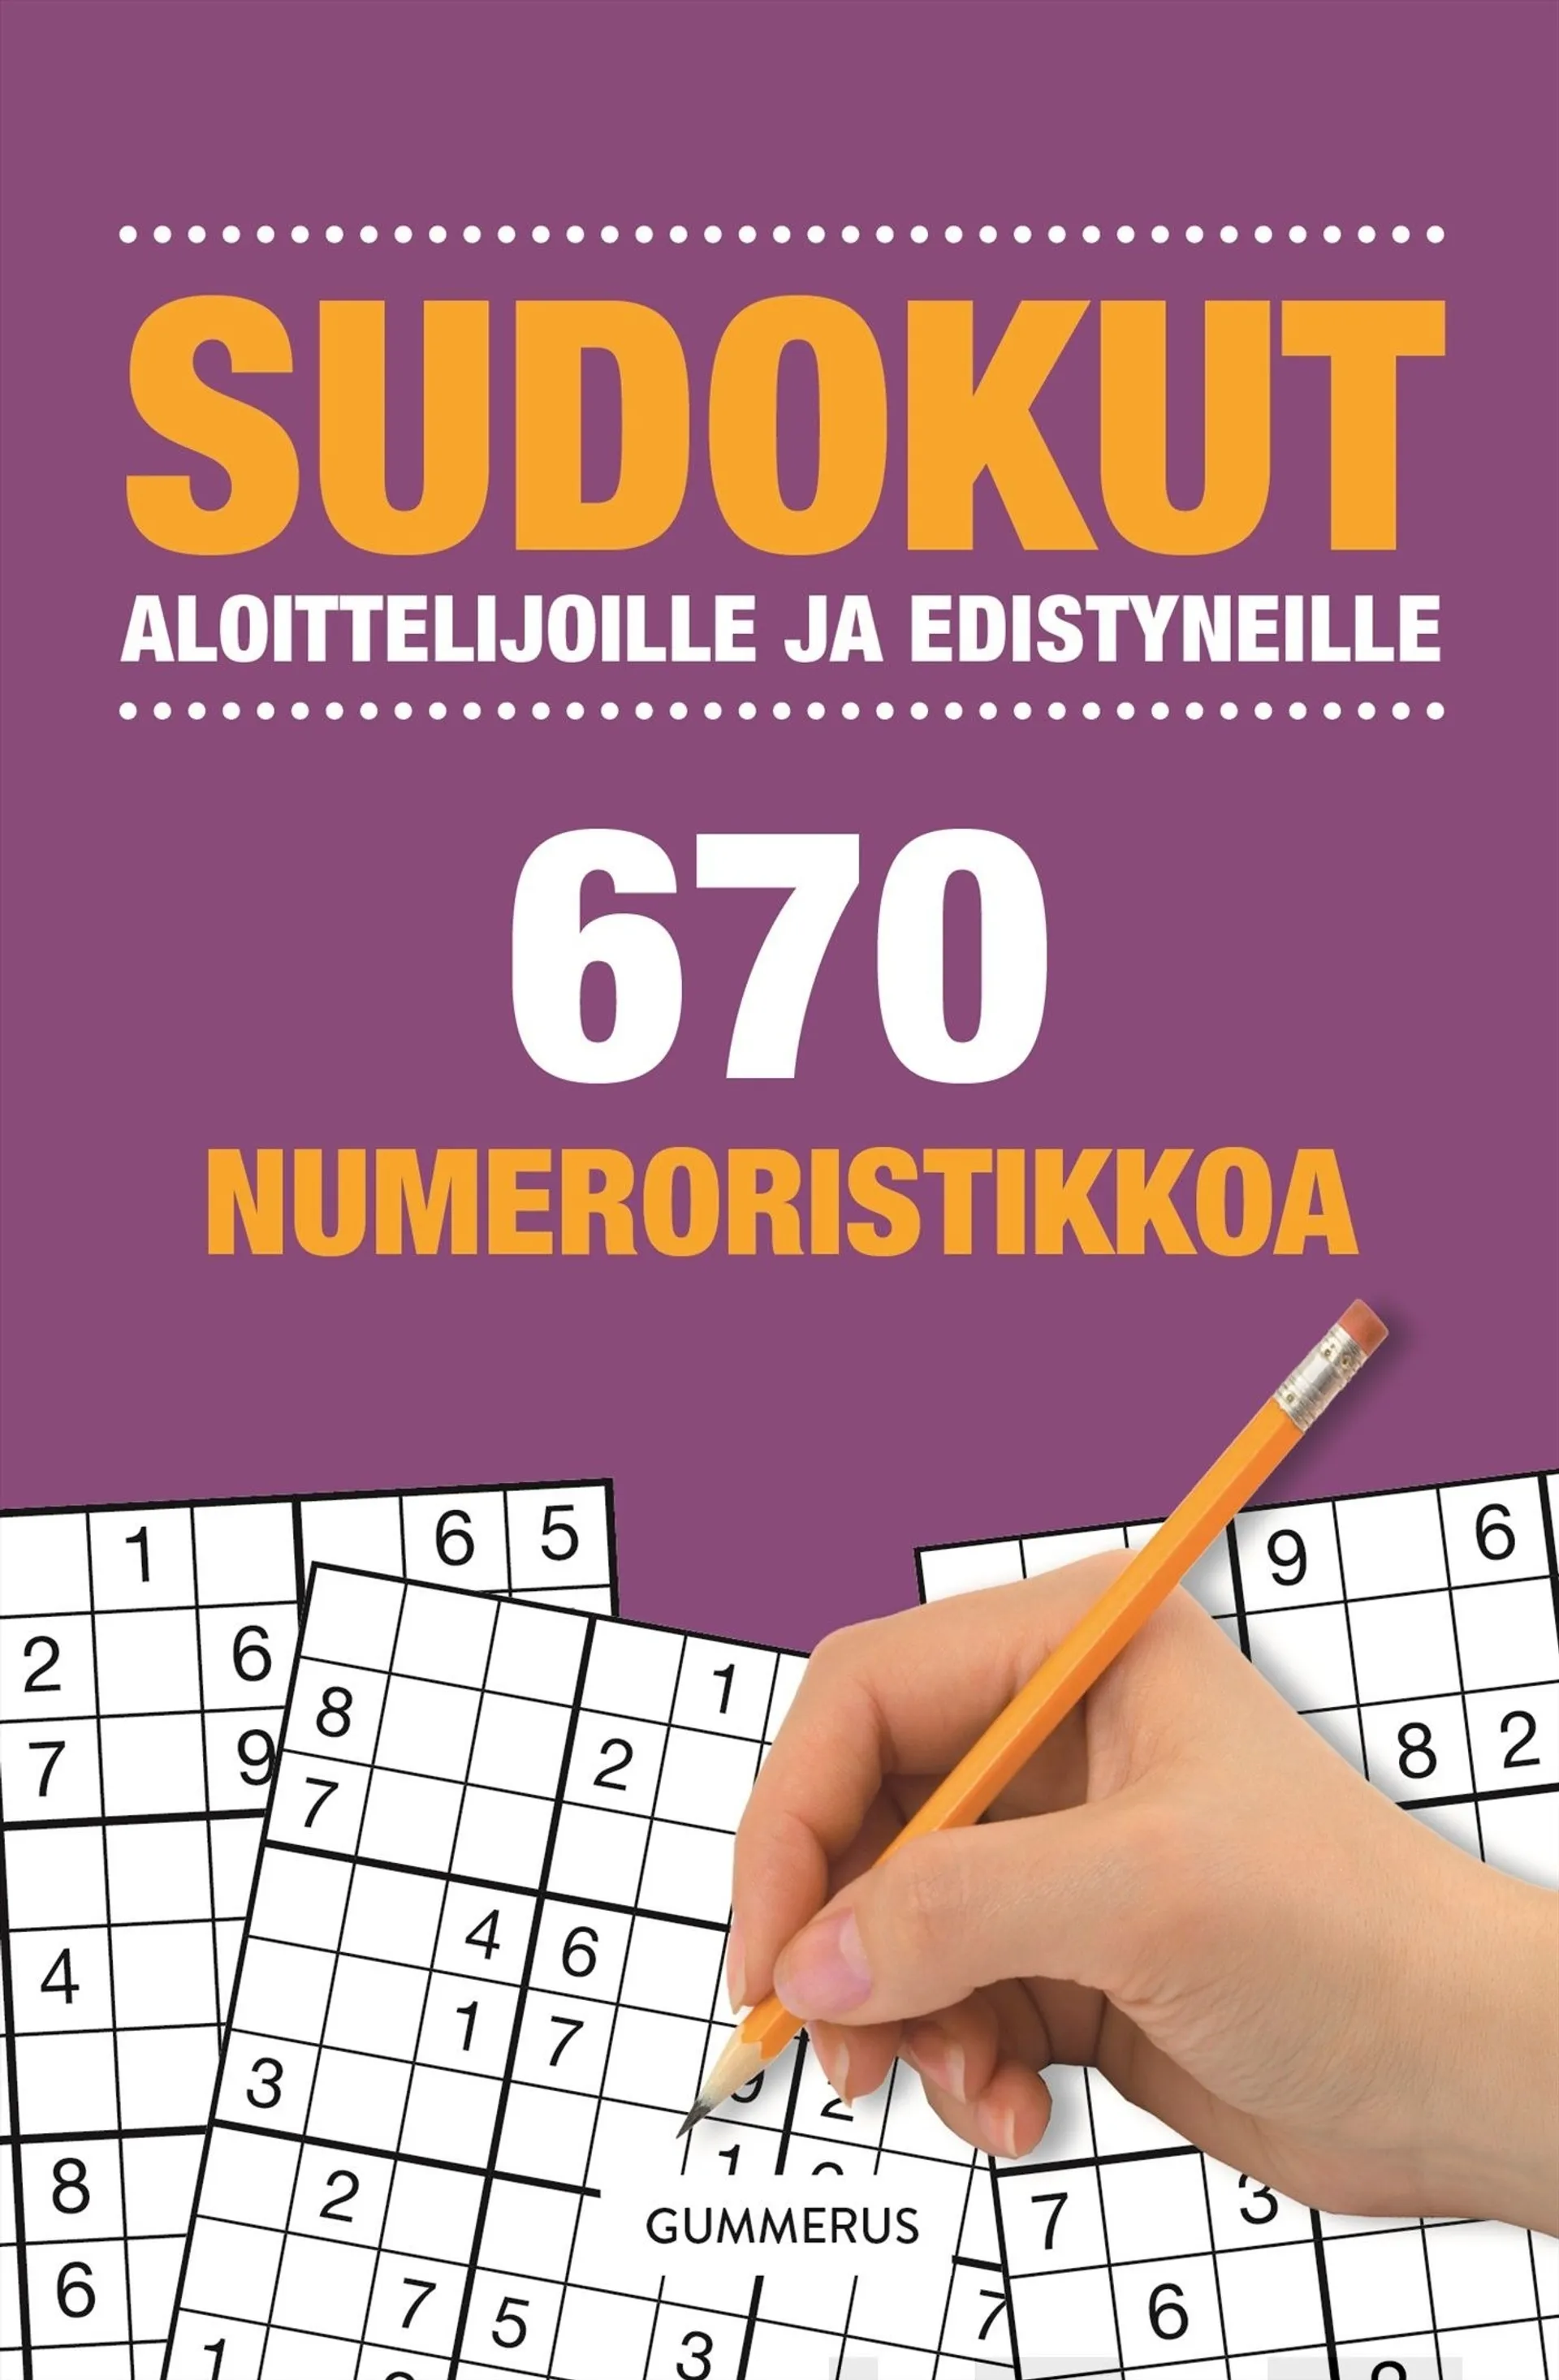 Sudokut aloittelijoille ja edistyneille - 670 uutta numeroristikkoa